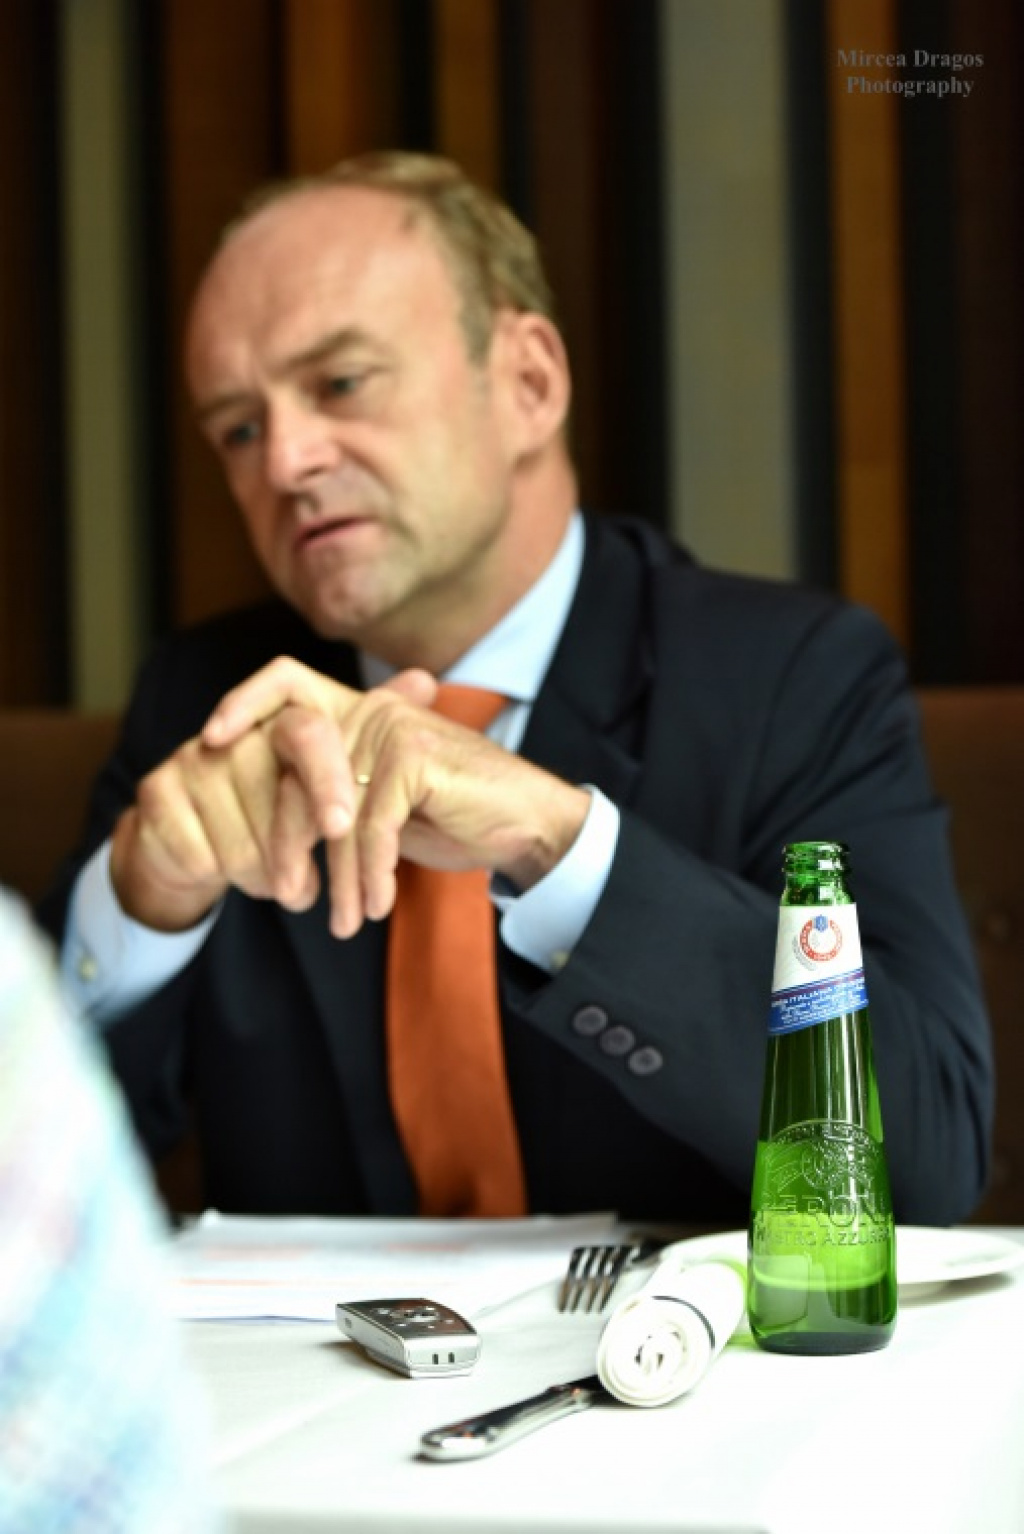 Gilles Antoine, seful L'Oreal Romania: De multe ori incerc sa gasesc solutii si nu scuze